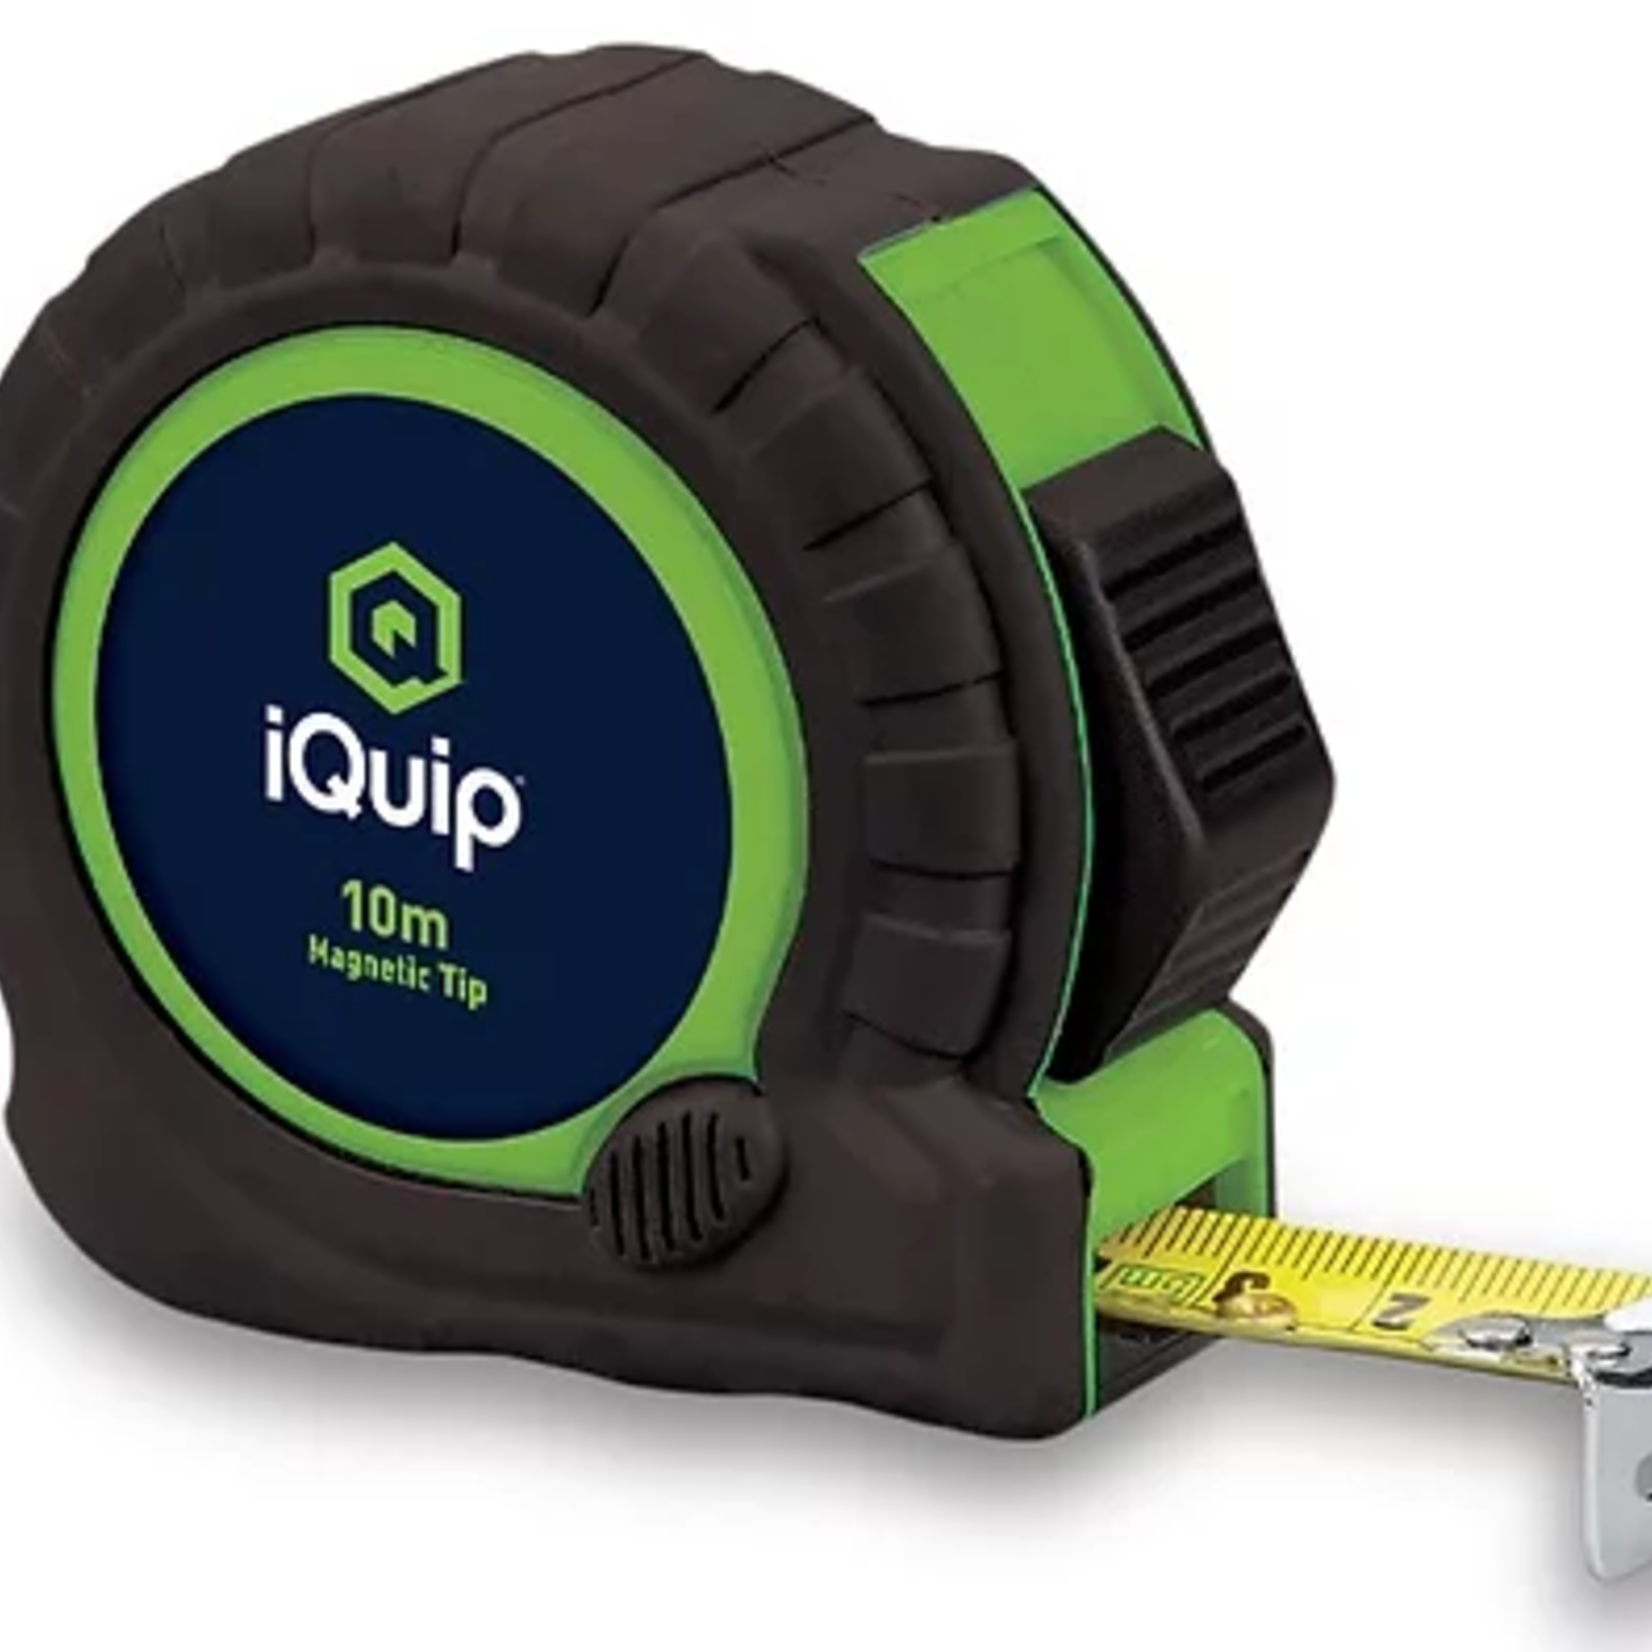 iQuip iQuip Tape Measure 10M x 25mm